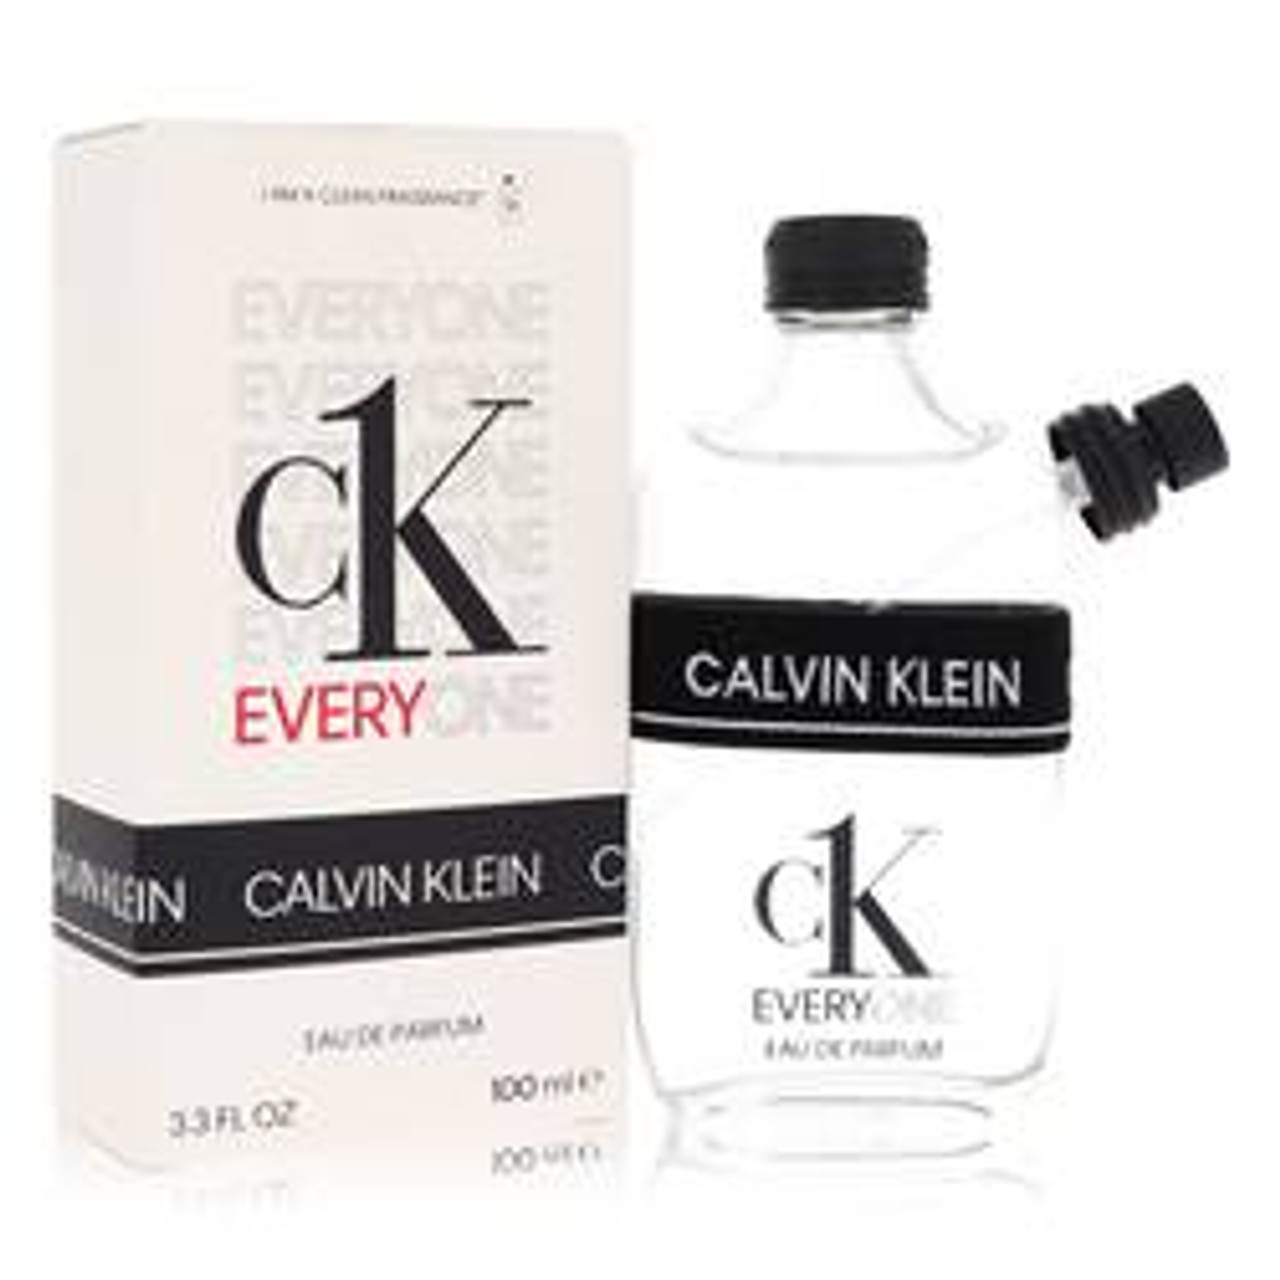 Ck Everyone Perfume By Calvin Klein Eau De Parfum Spray 3.3 oz for Women - *Pre-Order